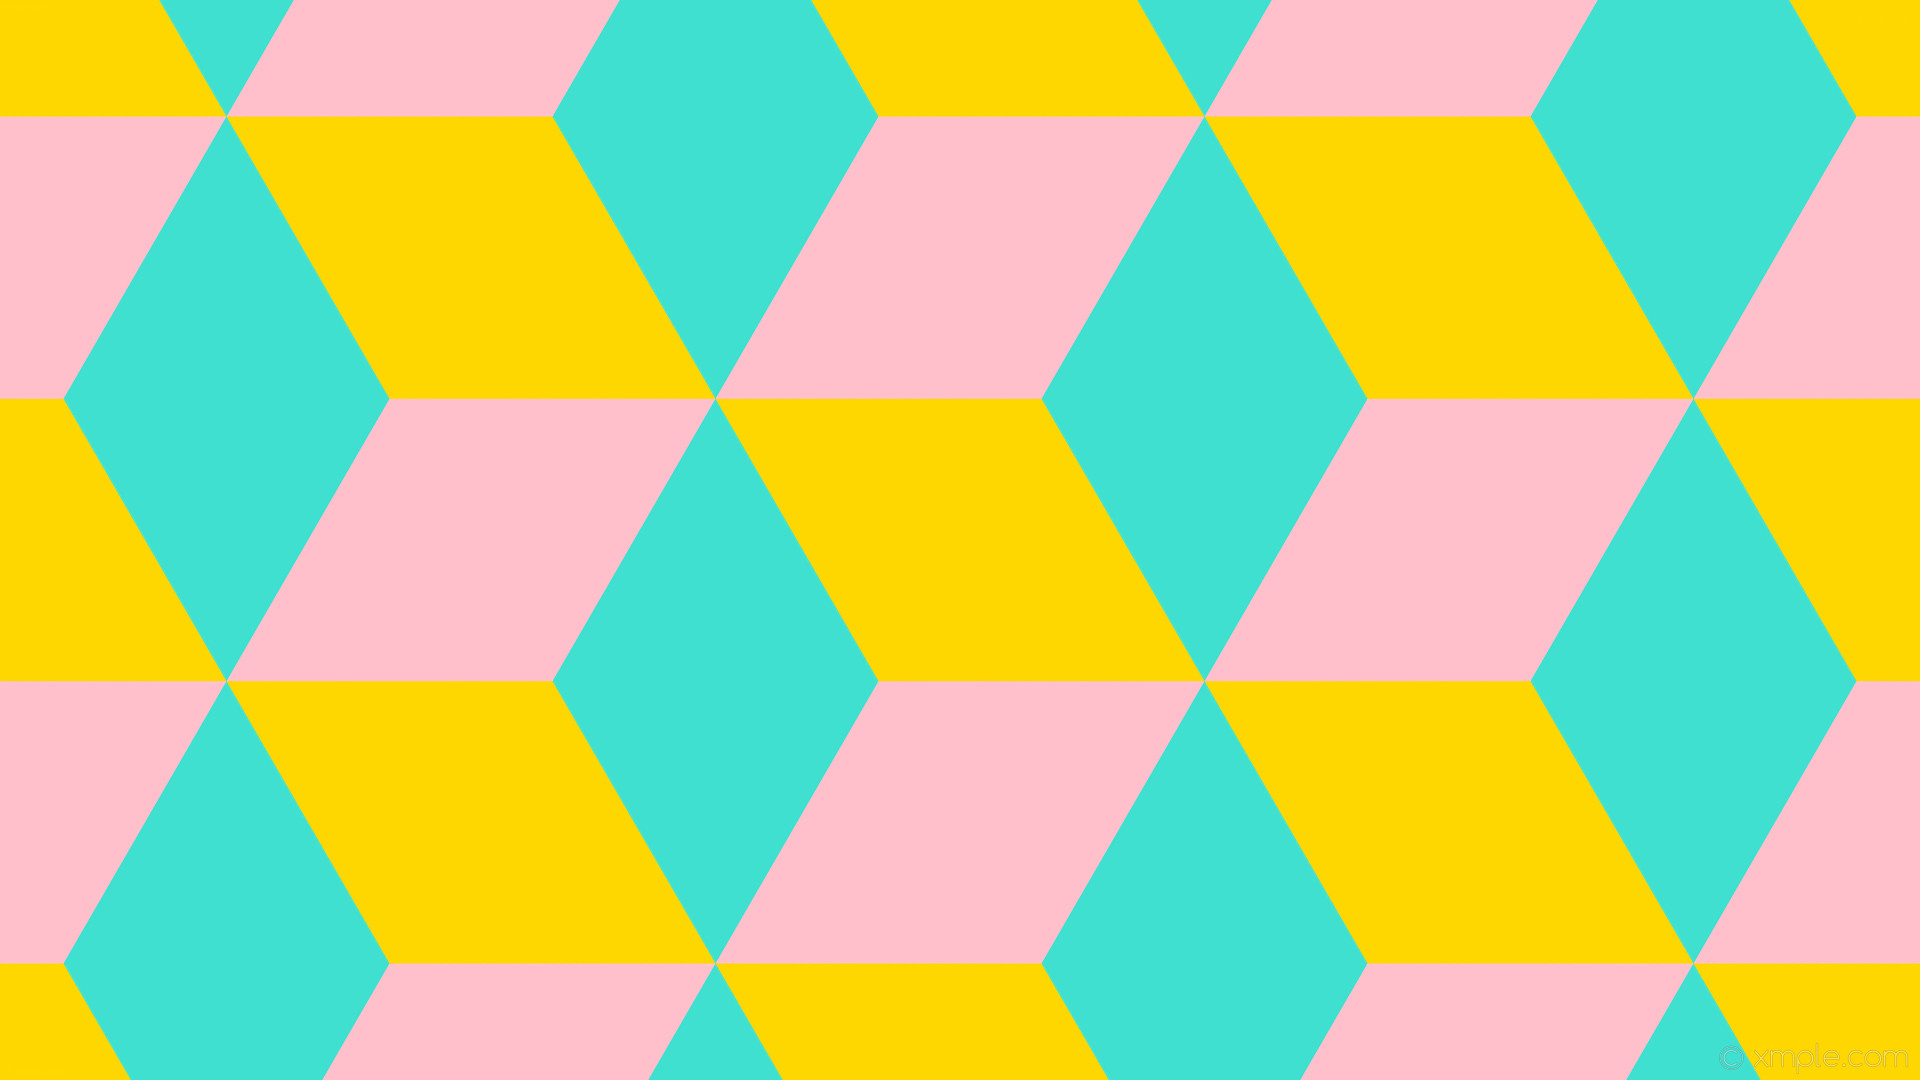 1920x1080 wallpaper 3d cubes yellow blue pink gold turquoise #ffd700 #40e0d0 #ffc0cb  330Â°